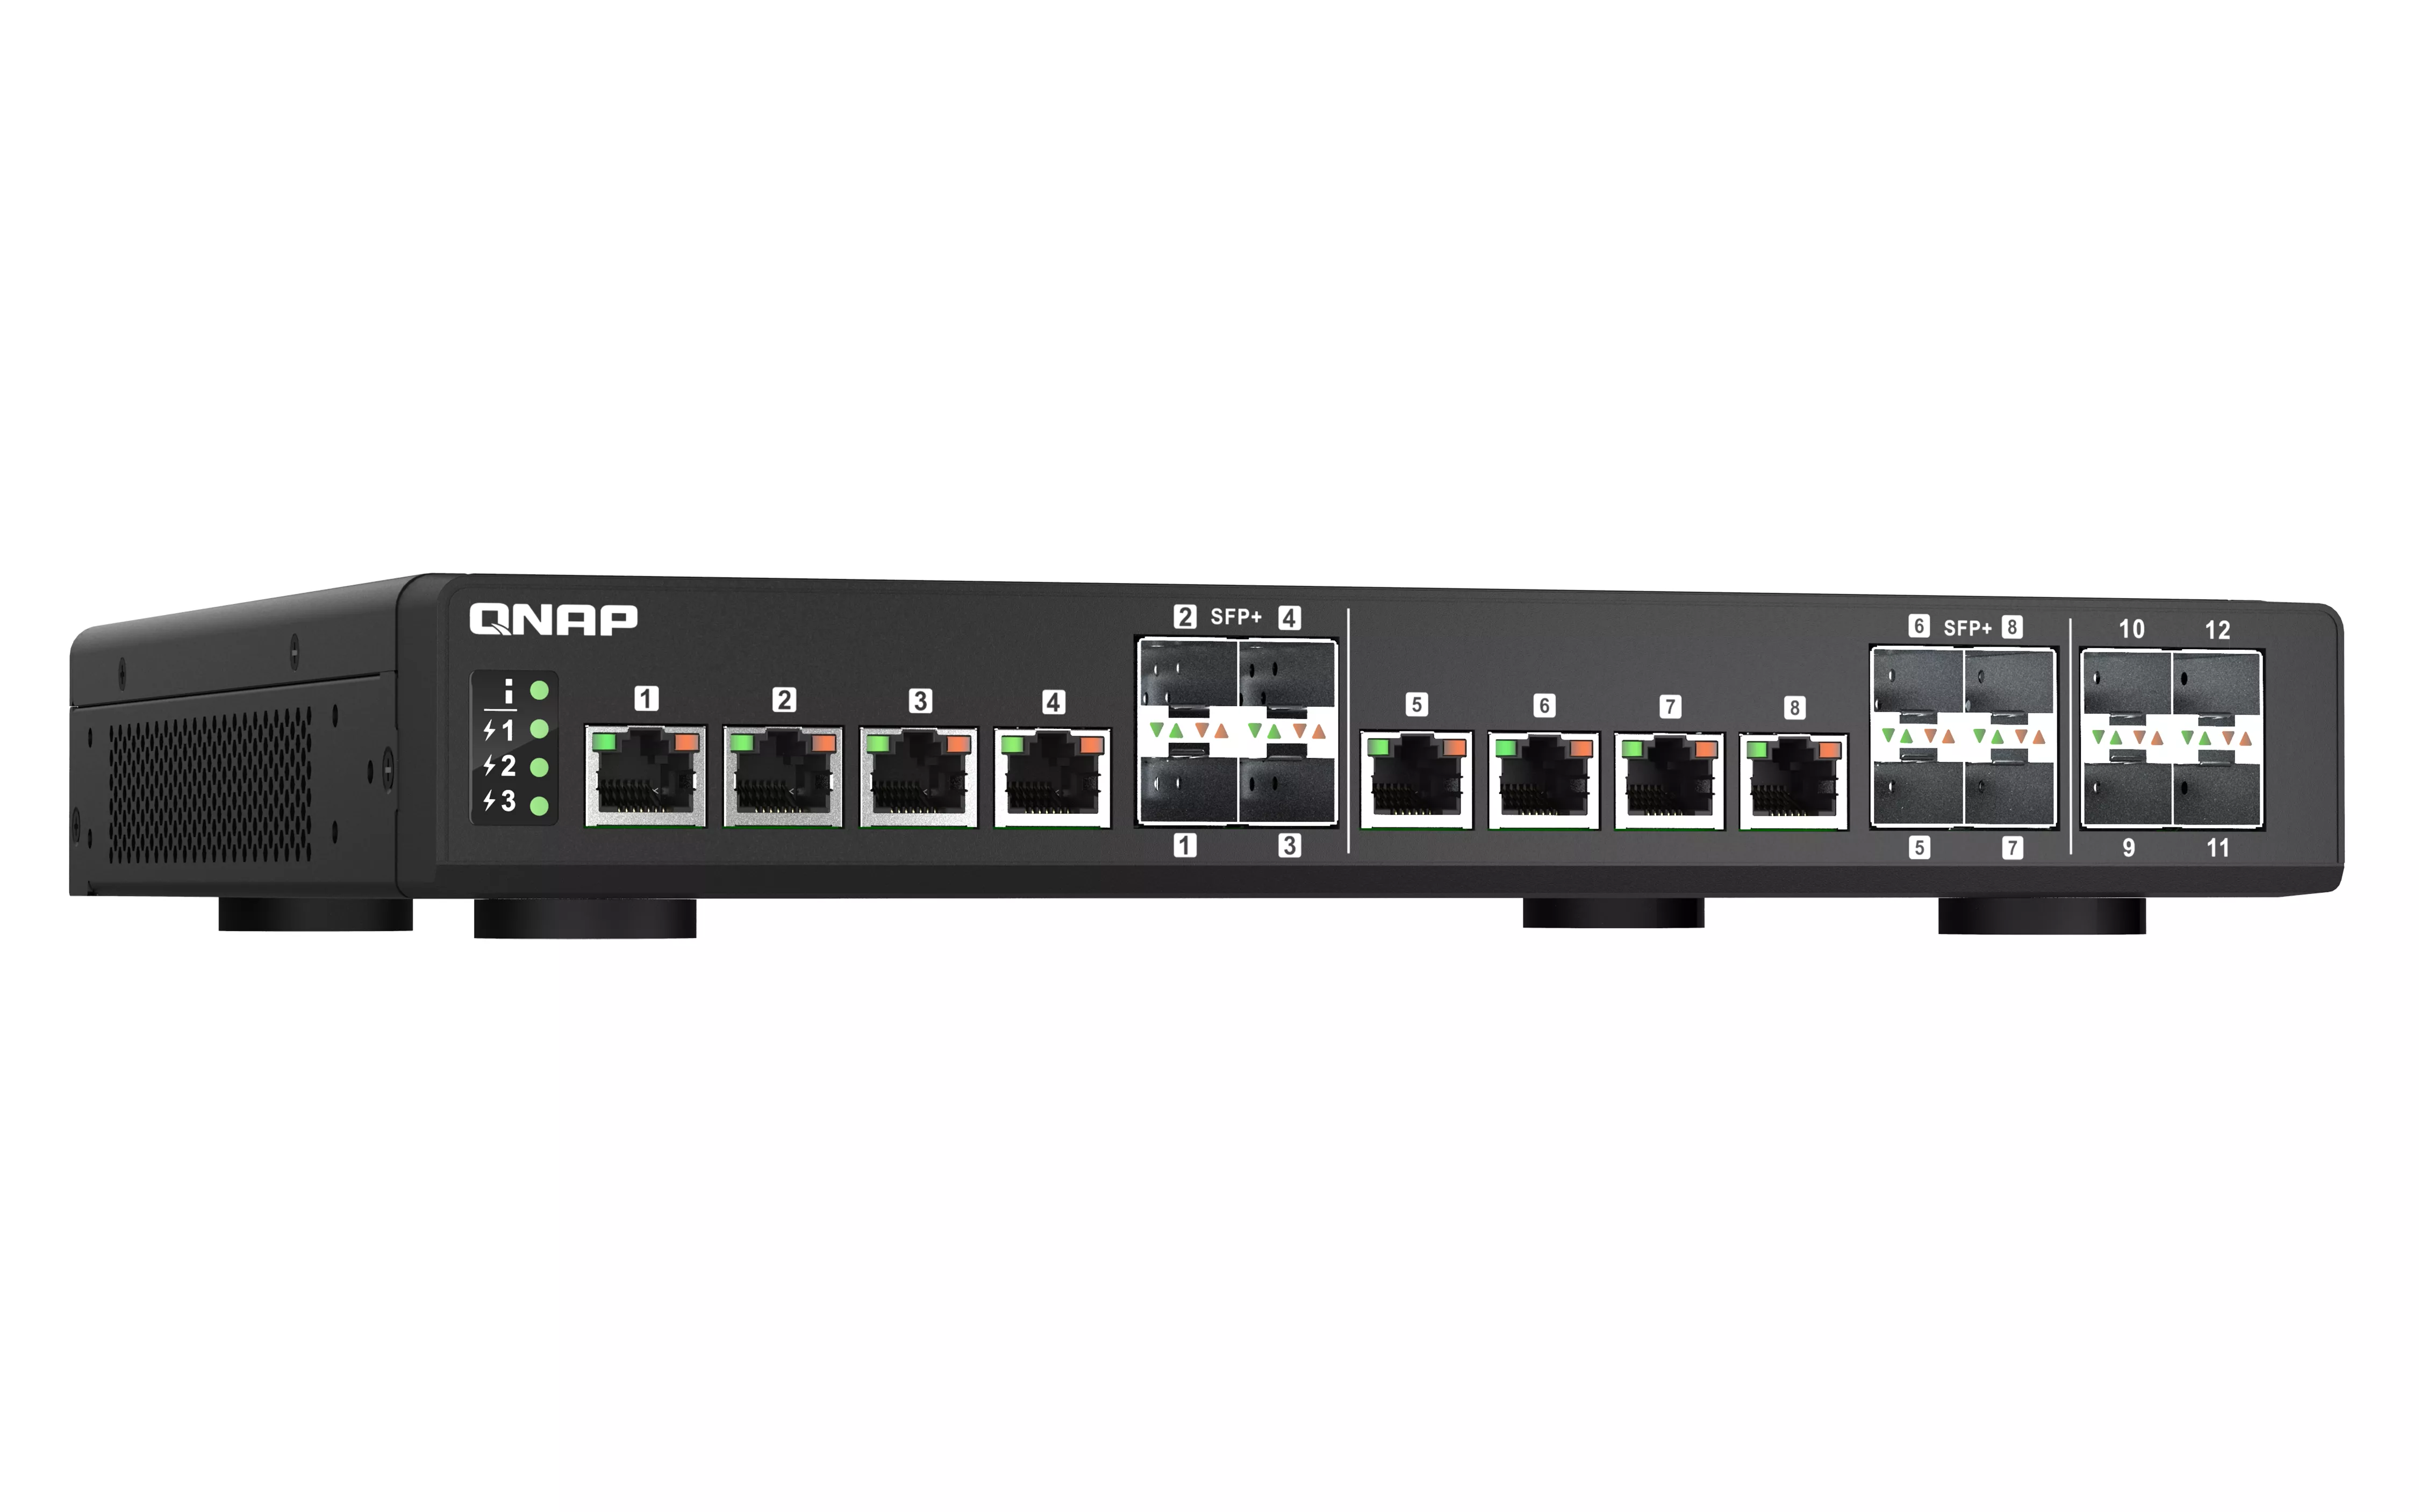 Vente QNAP QSW-IM1200-8C 8 ports 10GbE SFP+/RJ45 combo 4 QNAP au meilleur prix - visuel 2